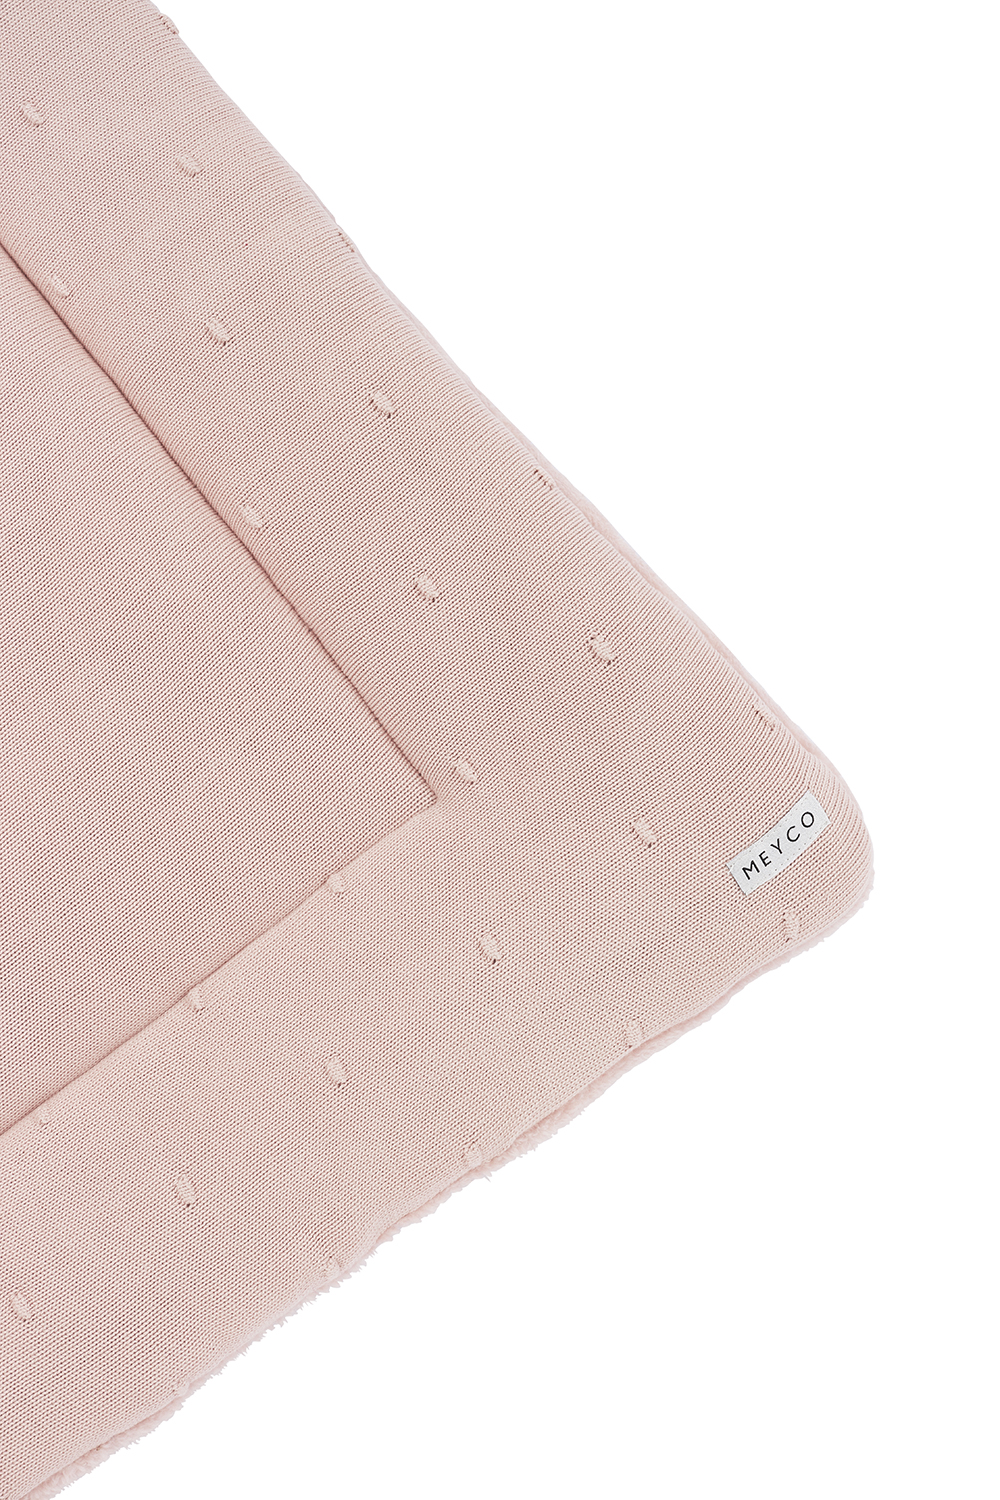 Playpen mattress Mini Knots teddy - soft pink - 77x97cm